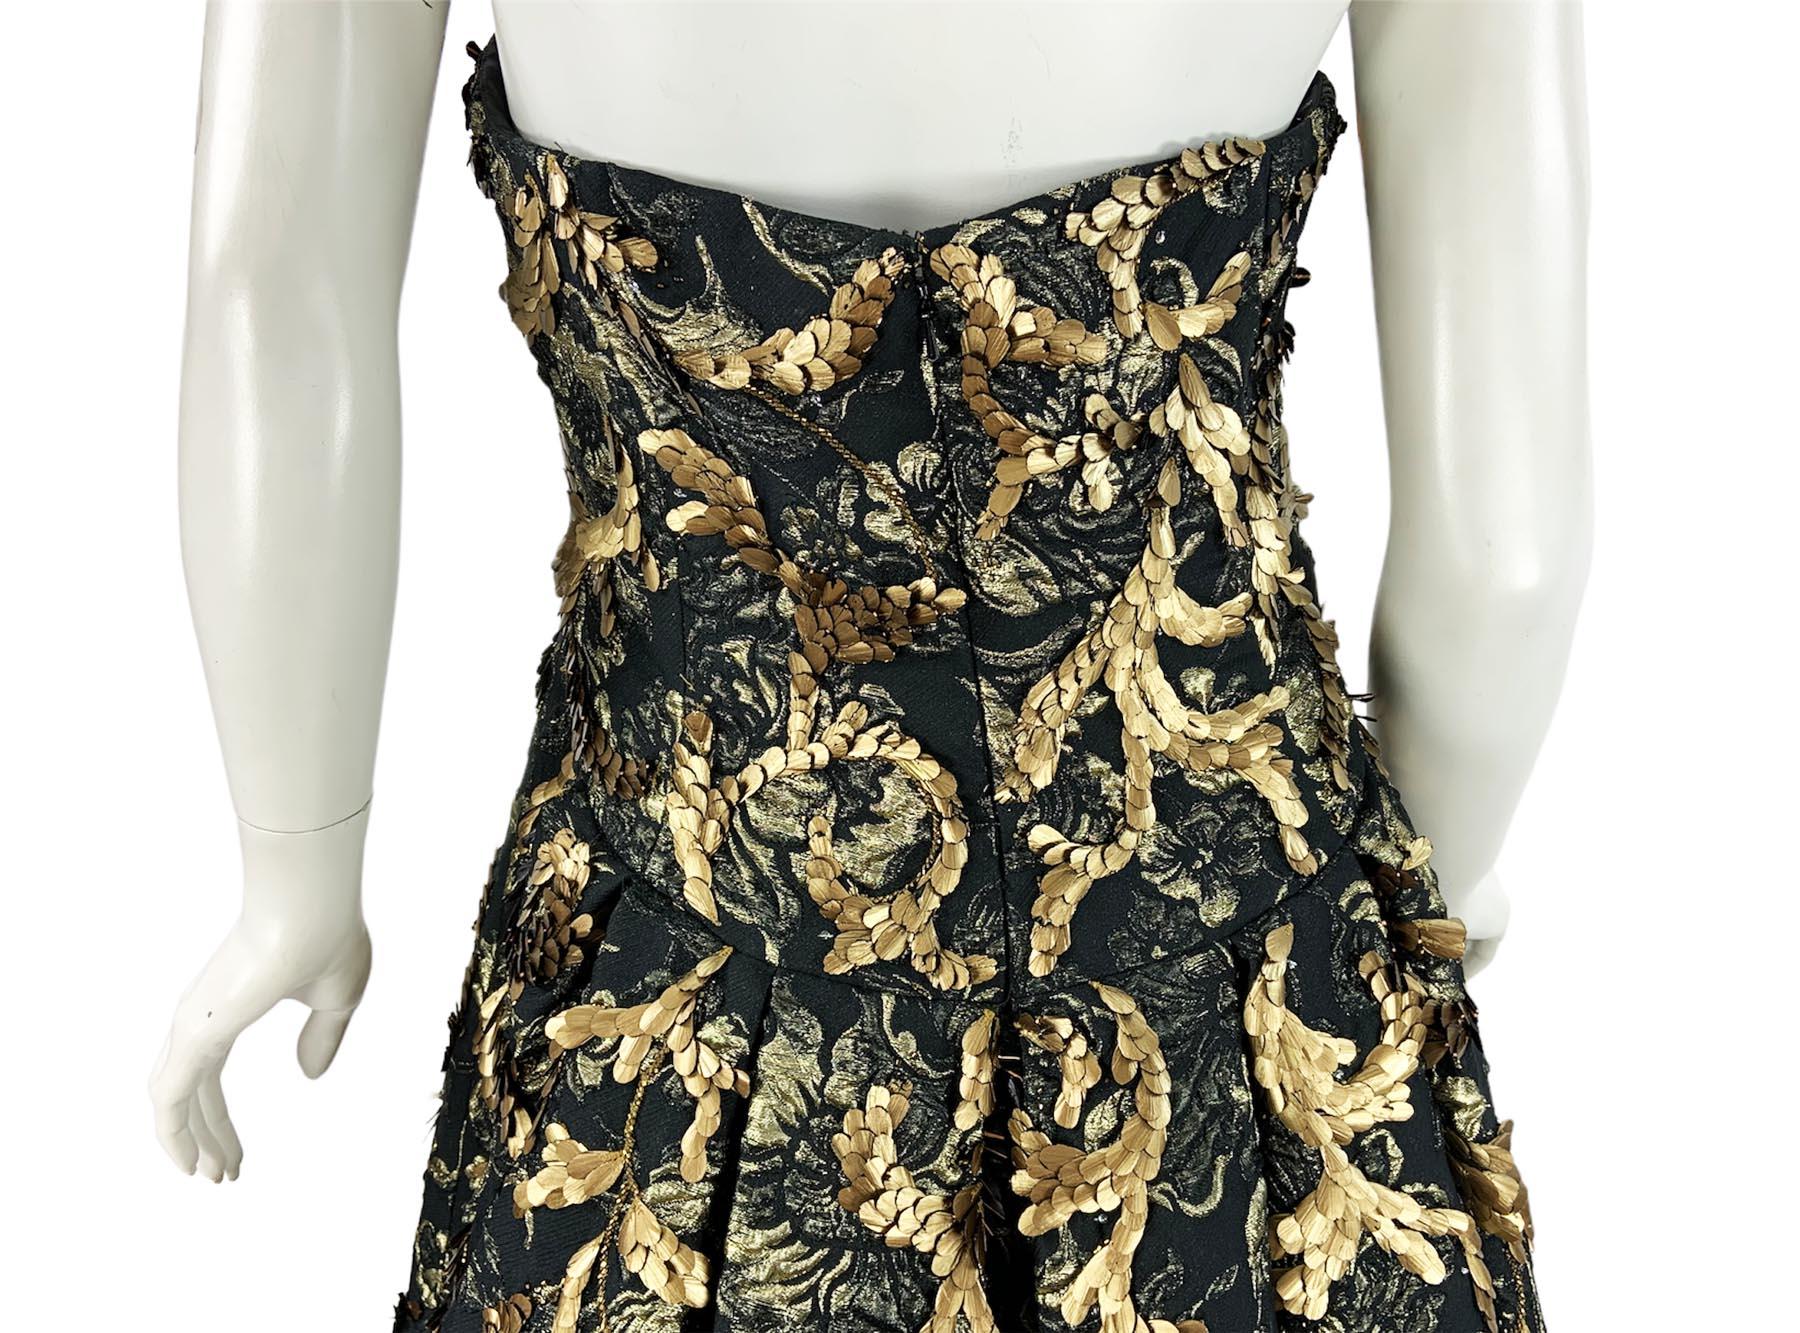 Oscar de la Renta FW 2014 Runway Museum Red Carpet Black Gold Gown Dress L / XL For Sale 11